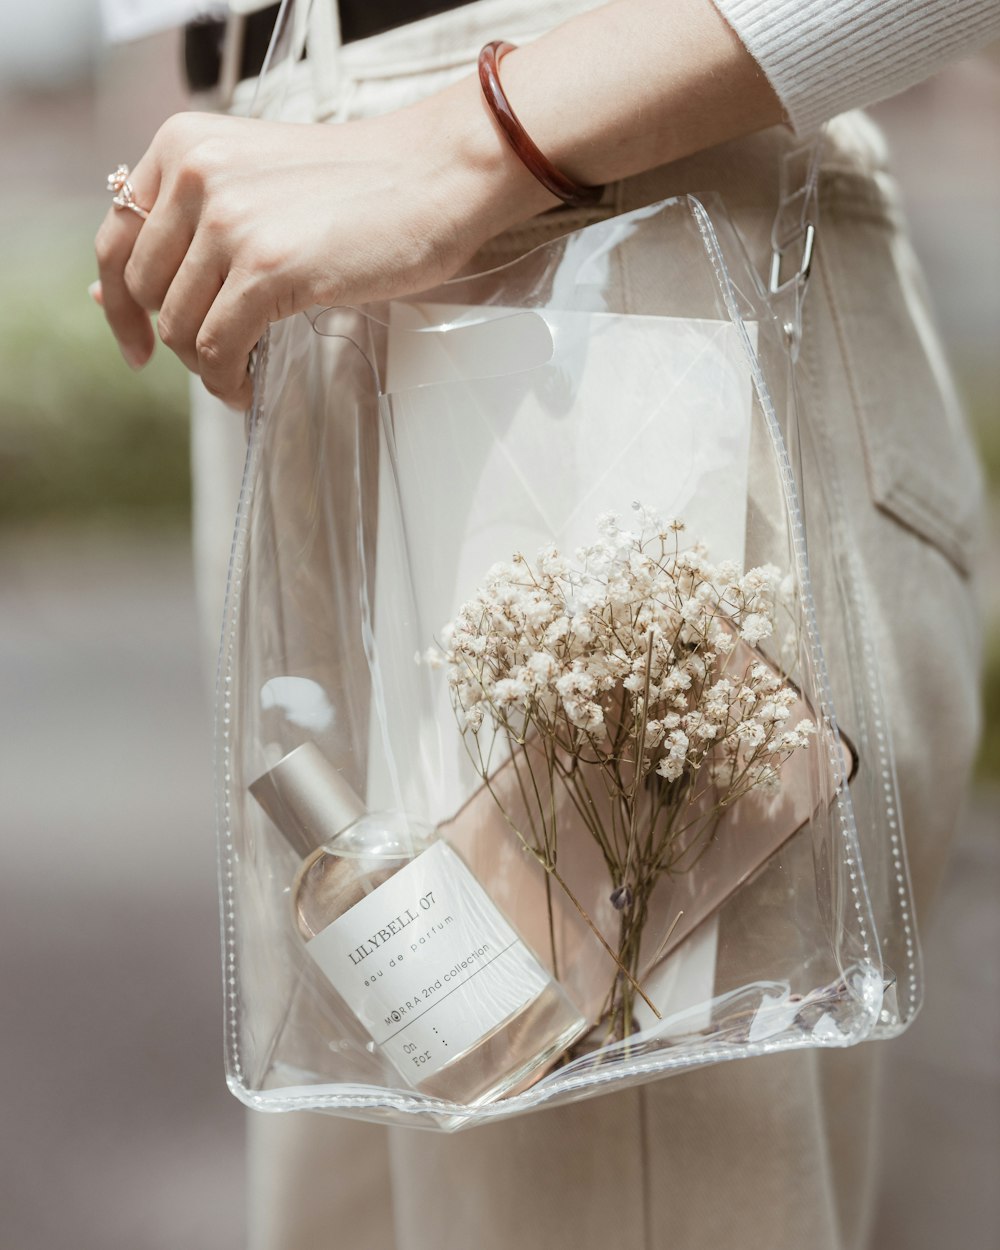 eine Person, die eine durchsichtige Tasche mit Blumen darin hält